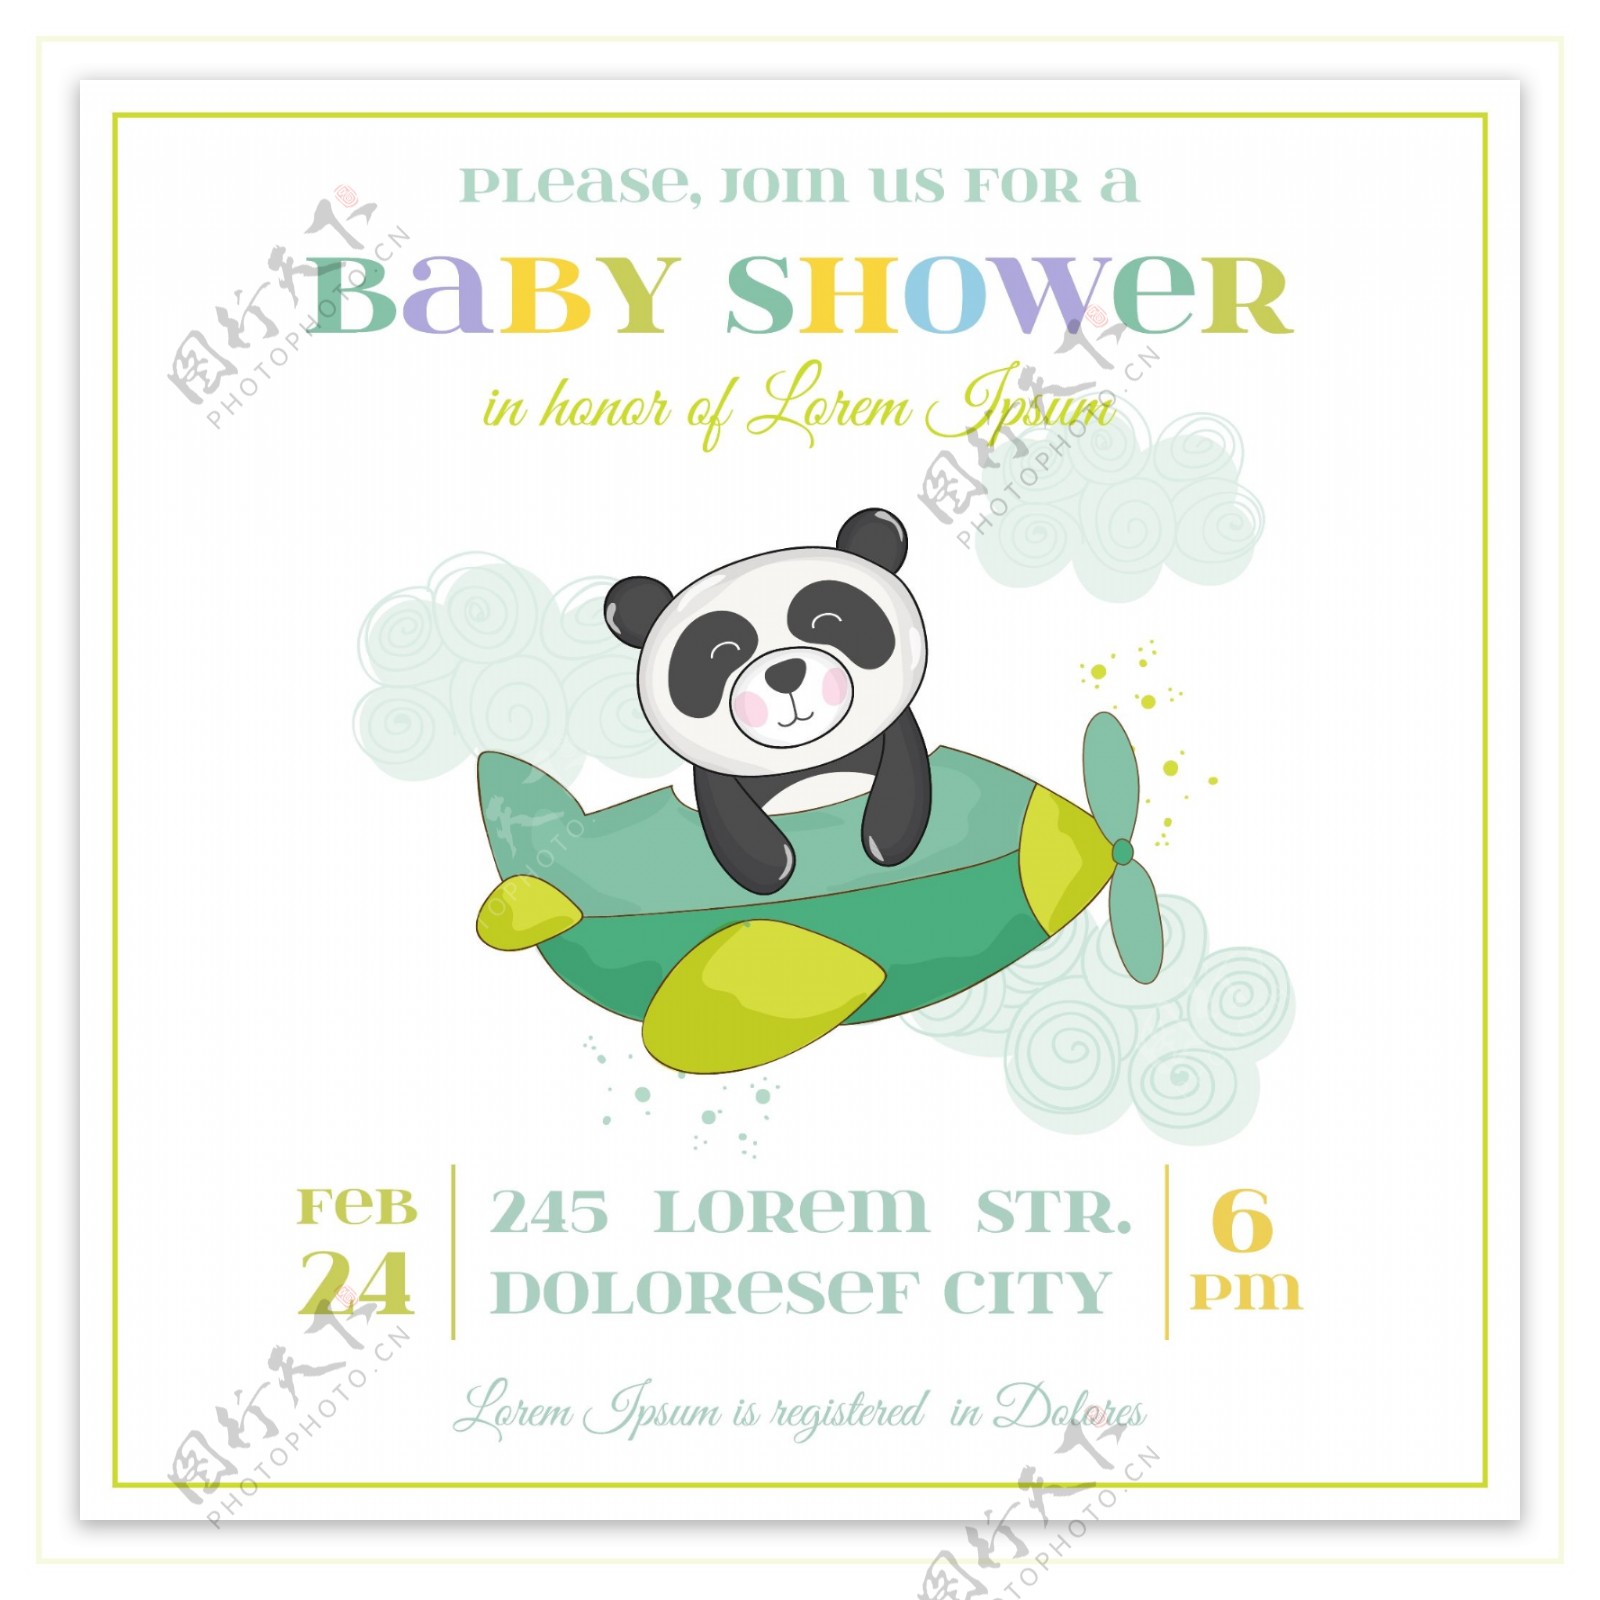 飞机婴儿洗礼卡通熊猫邀请卡片矢量素材